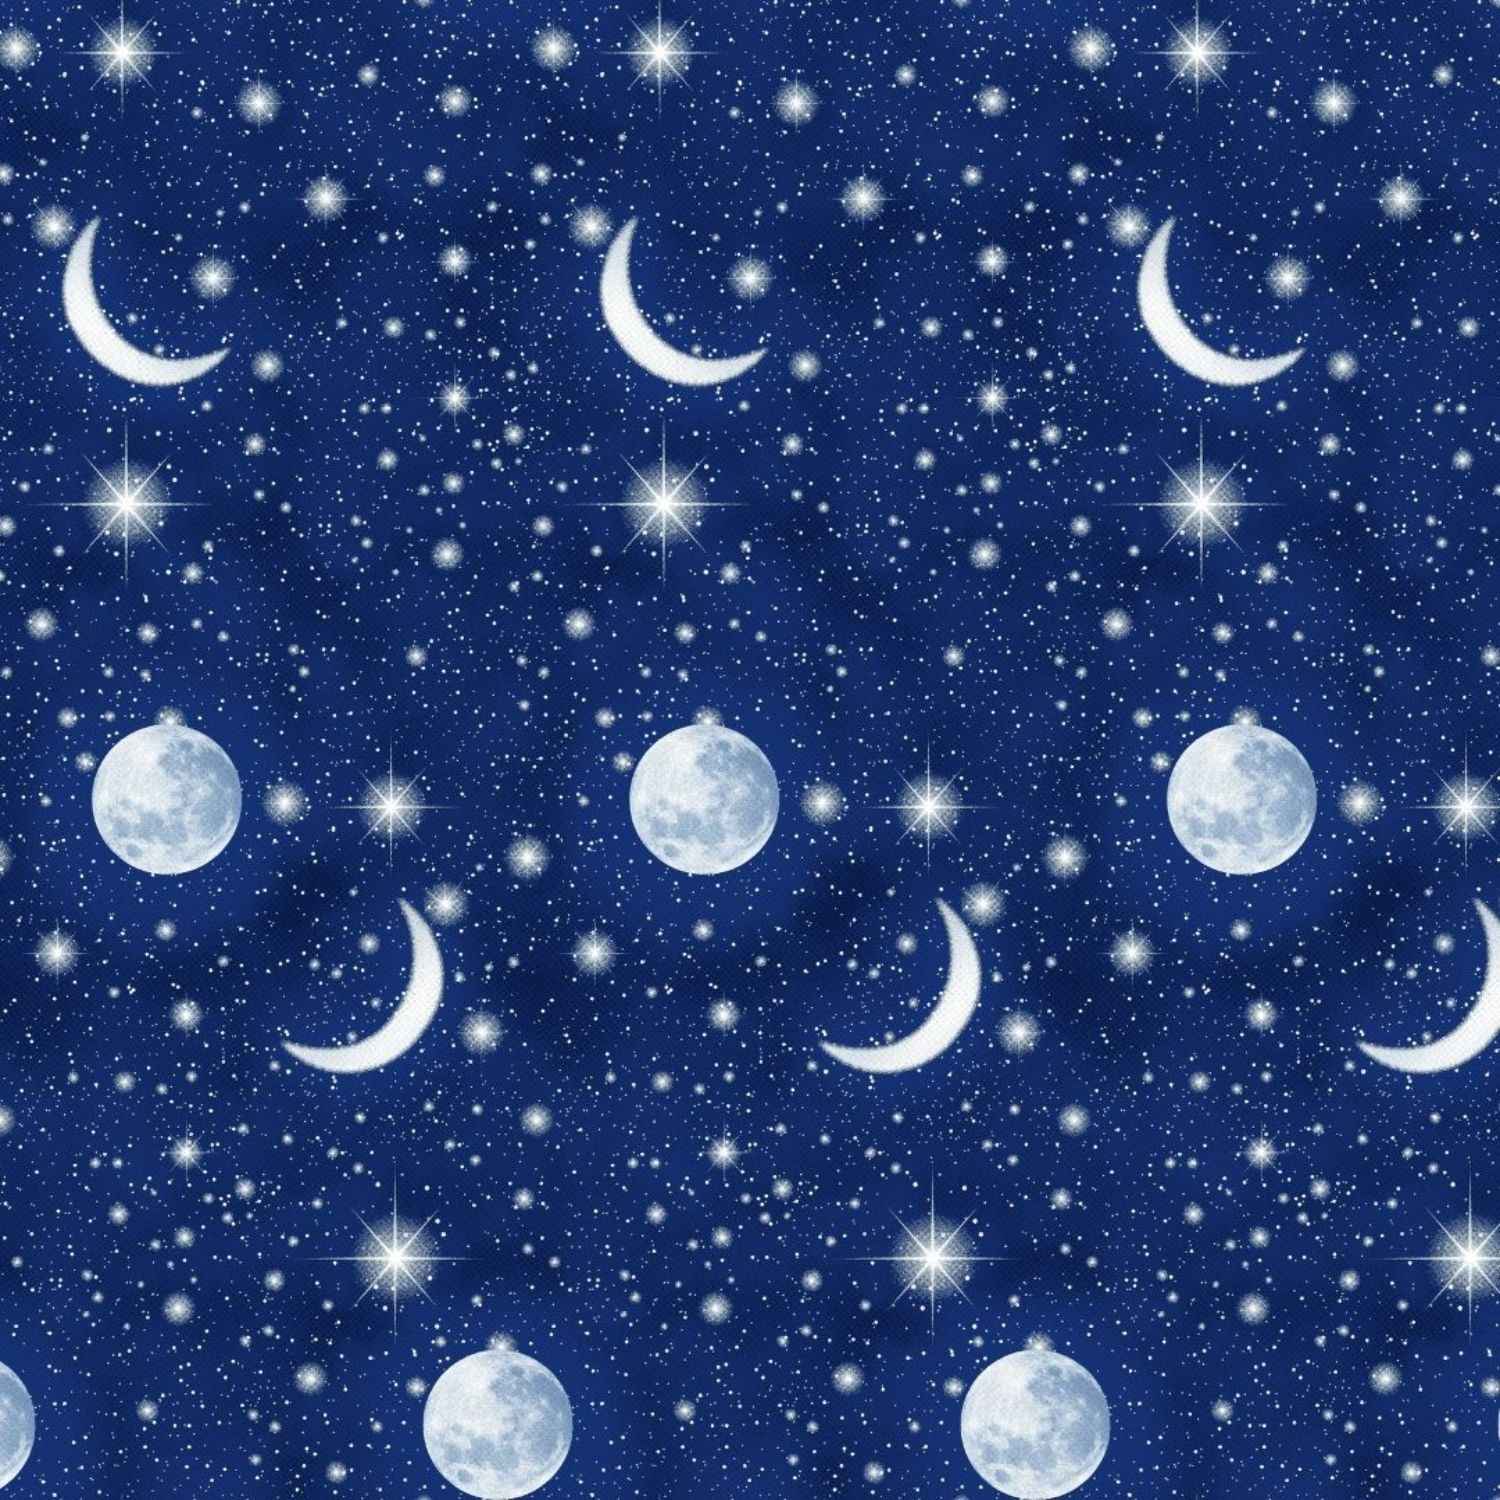 copripiumino-luna-puro-cotone-quadrifoglio-cielo-stellato-luna-stelle-costellazione-notte-universo-blu-scuro-bianco-pattern